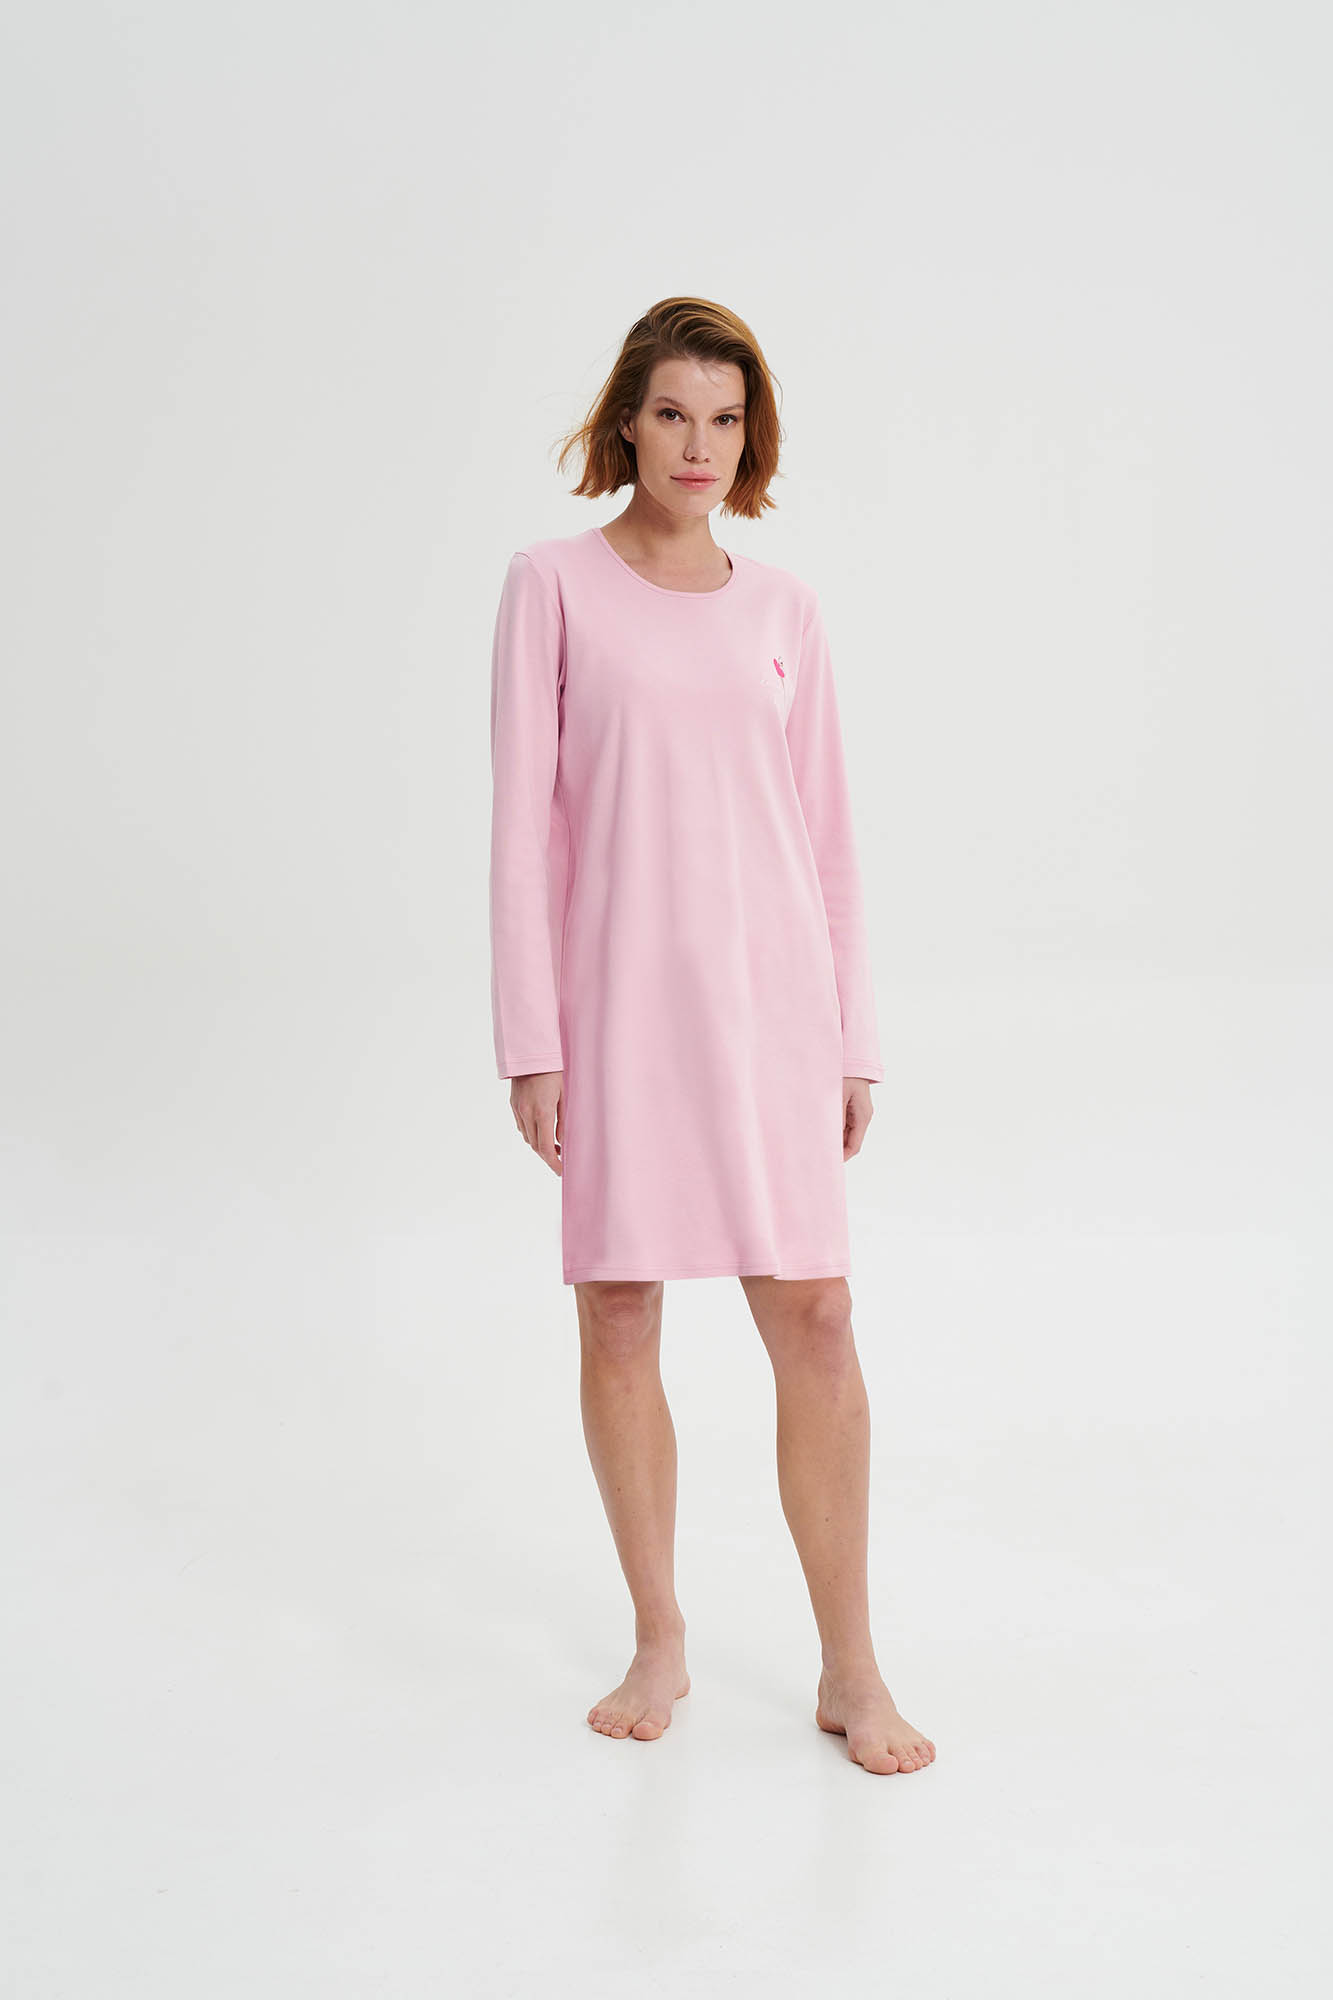 Vamp - Noční košile s dlouhým rukávem 19456 - Vamp pink nectar XXL